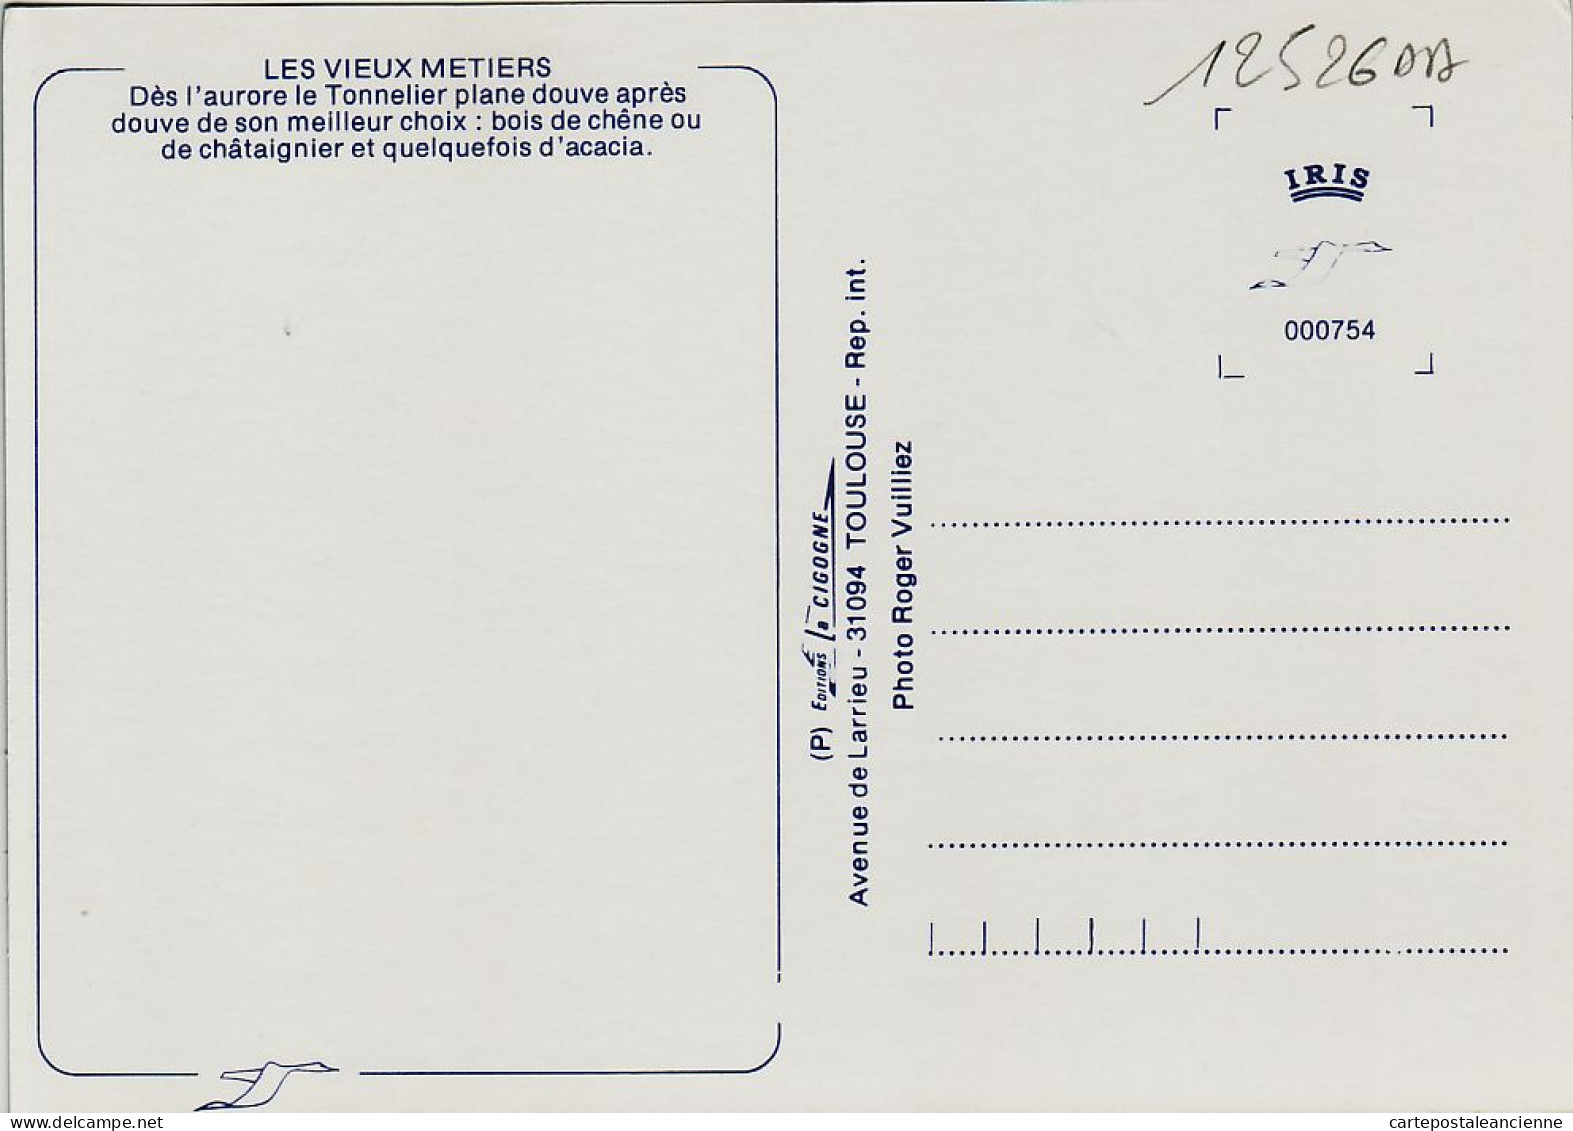 06281 / Midi-Pyrénées Le TONNELIER Douve Chene Chataignier Accacia Vin VIEUX METIERS 1980s- Photo VUILLIEZ CIGOGNE - Kunsthandwerk